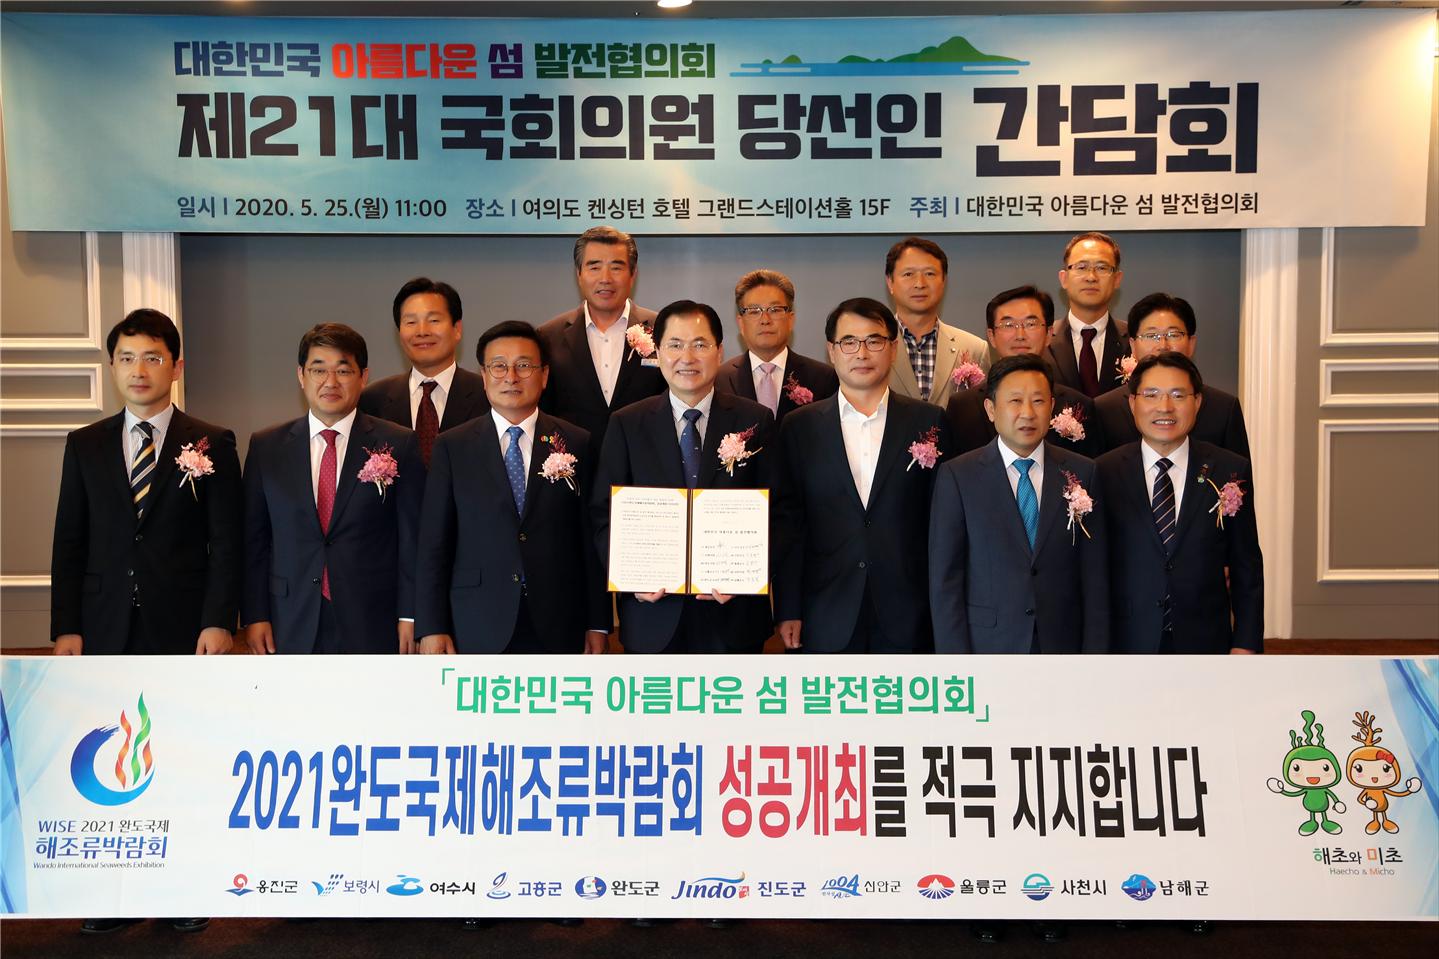 대한민국 아름다운 섬 발전협의회, “2021완도국제해조류박람회 성공 개최를 지지합니다!”